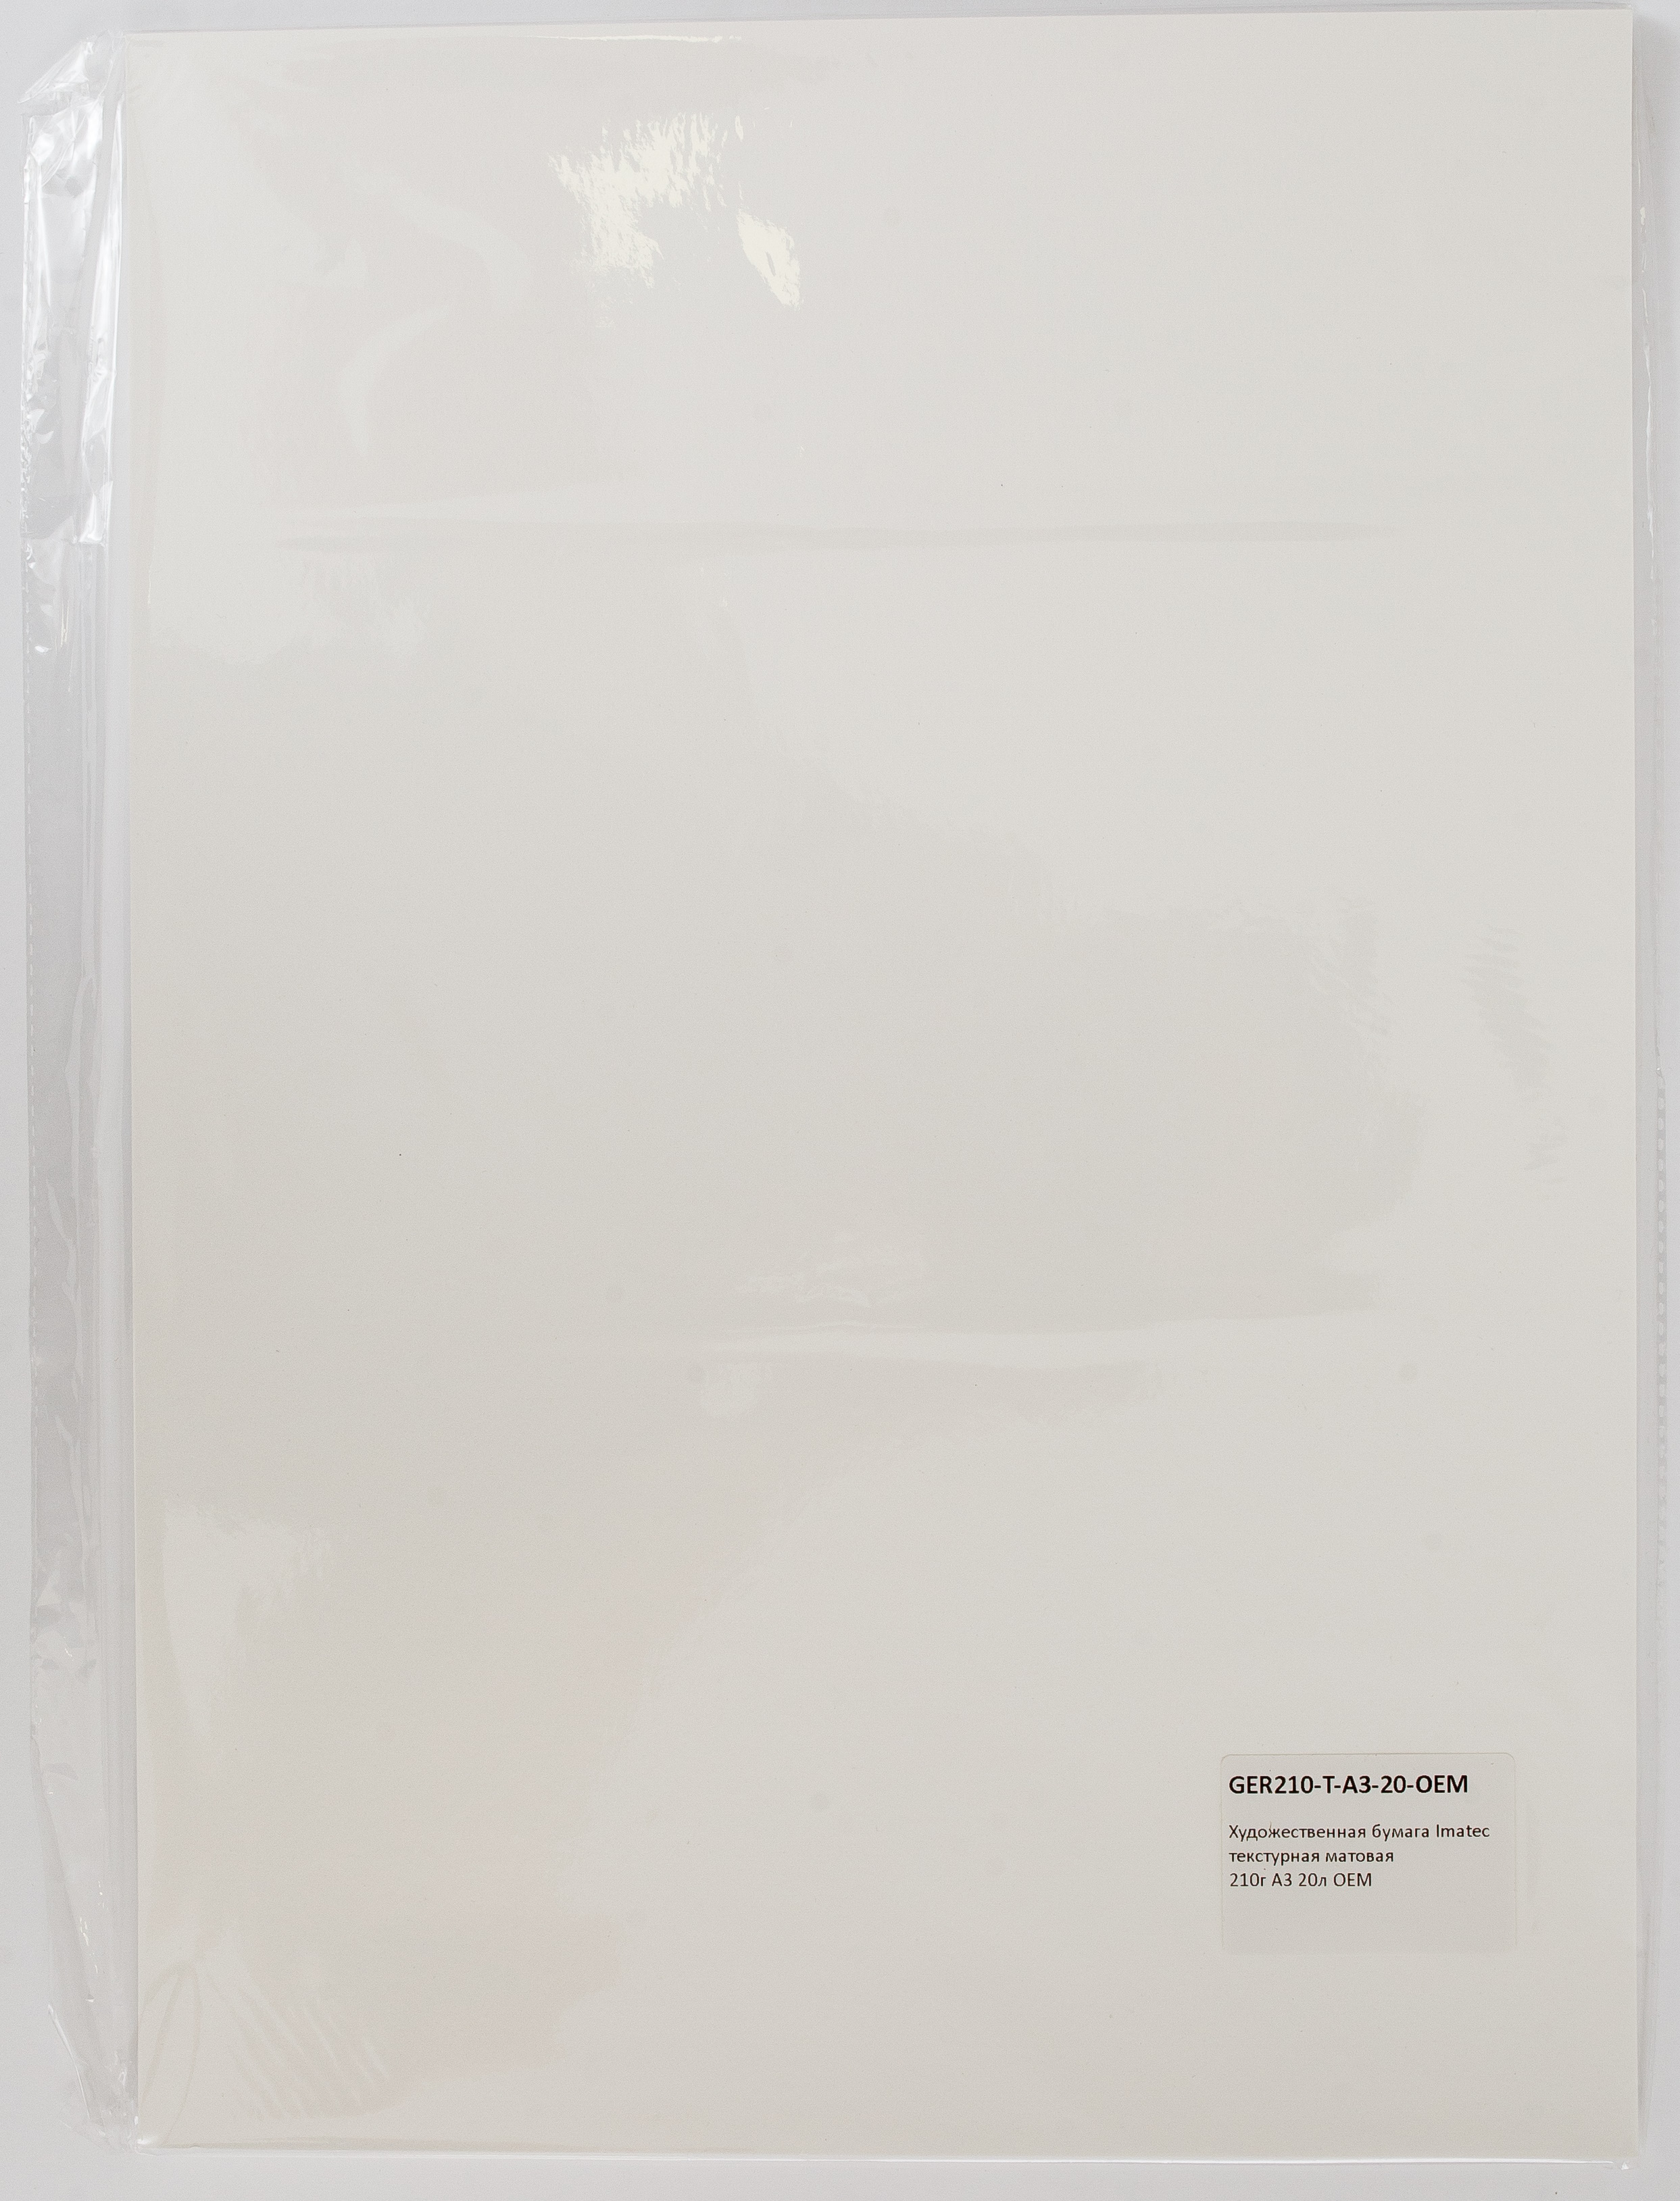 Художественная текстурная матовая бумага 210 г А3 20 л Imatec OEM